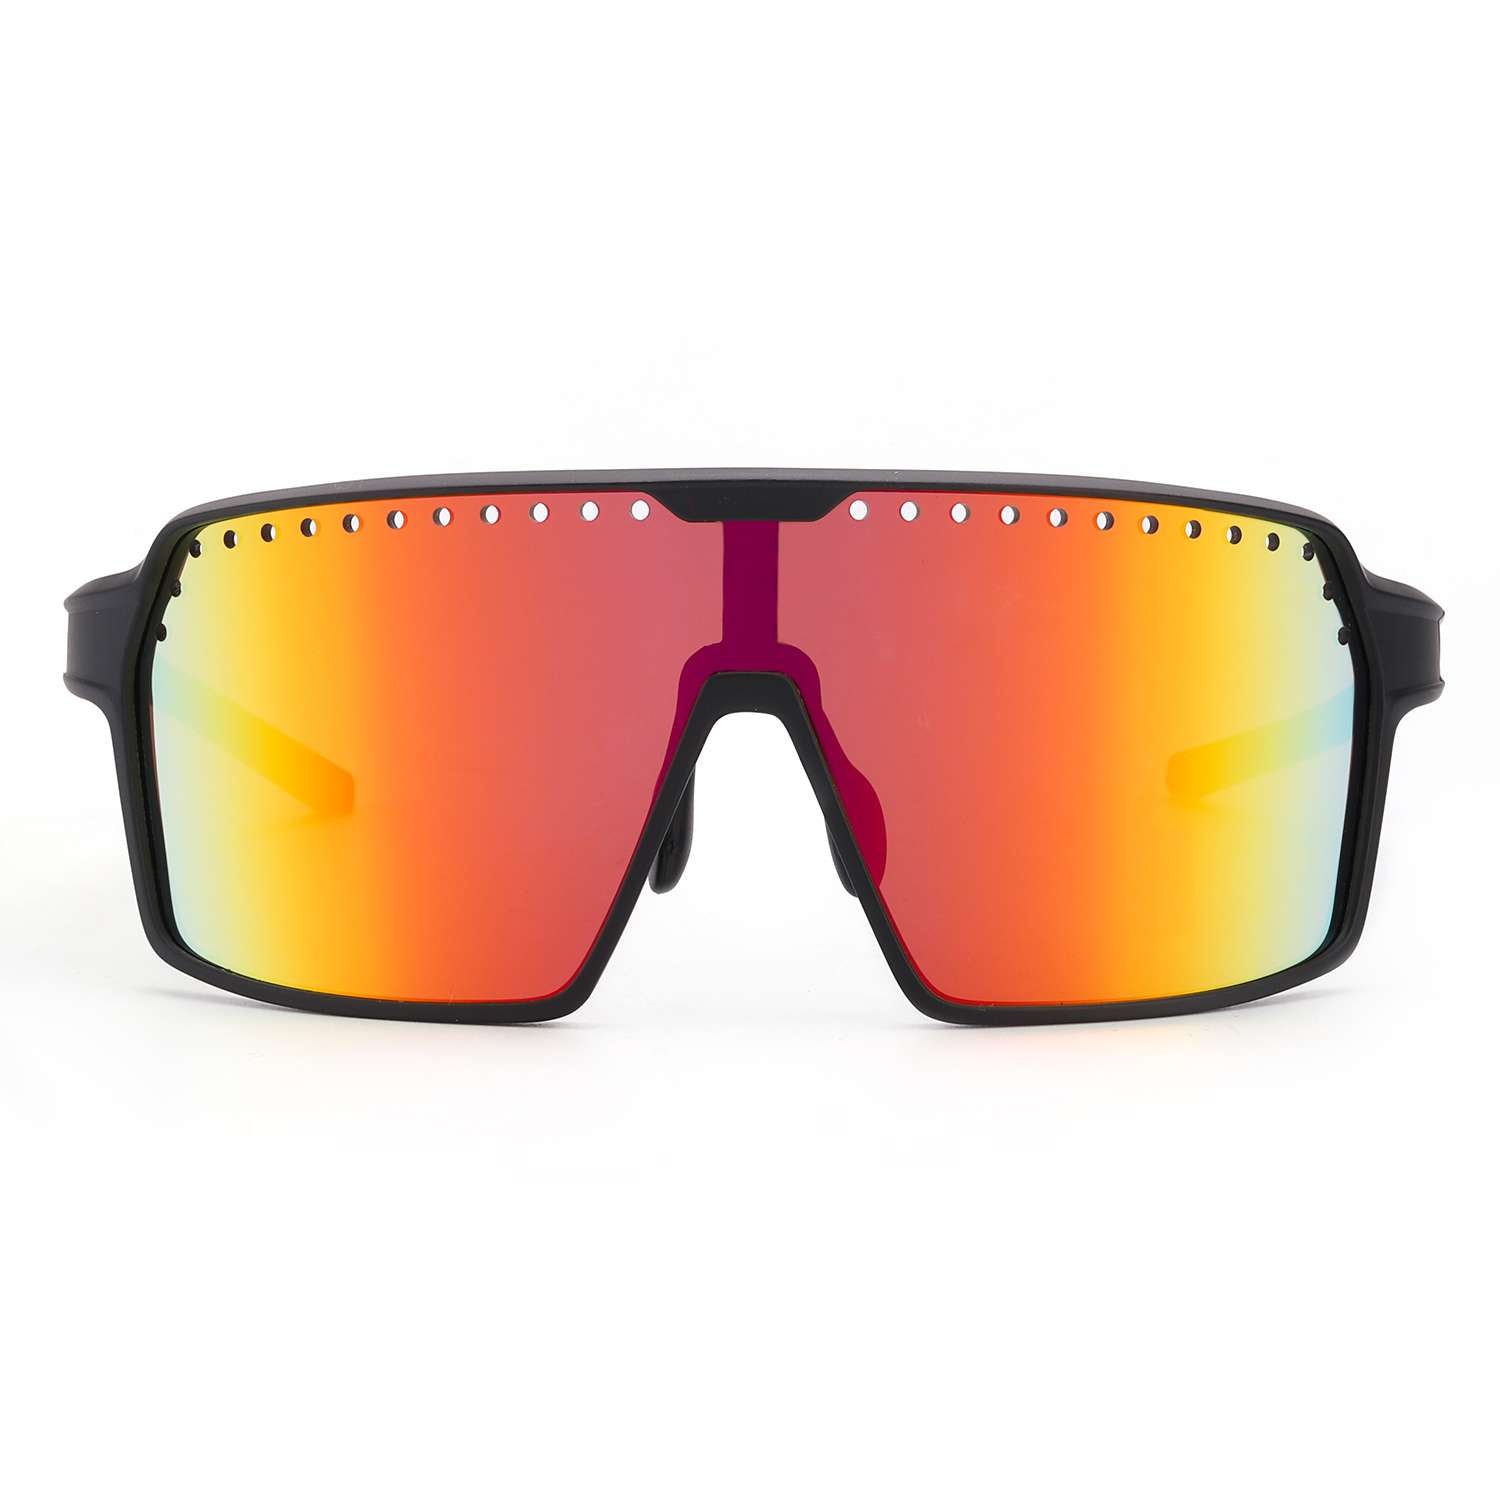 LVIOE Men's Oversized Wrap Sunglasses for Running Fishing Driving